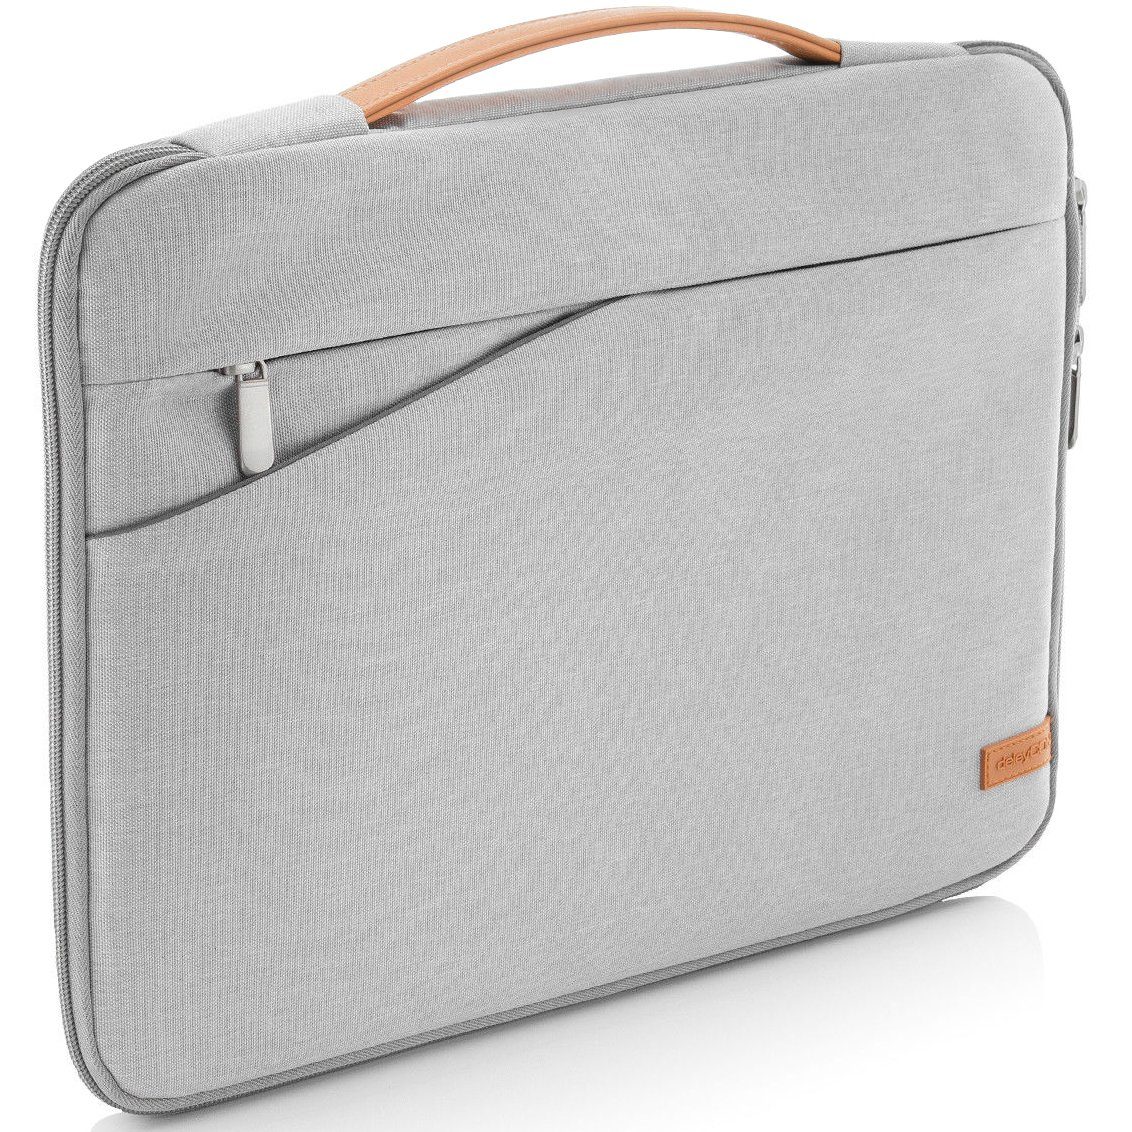 deleyCON Businesstasche »deleyCON Laptop Tasche bis 17“ Zoll (43,2cm)  Notebook Netbook MAC Hellgrau« online kaufen | OTTO